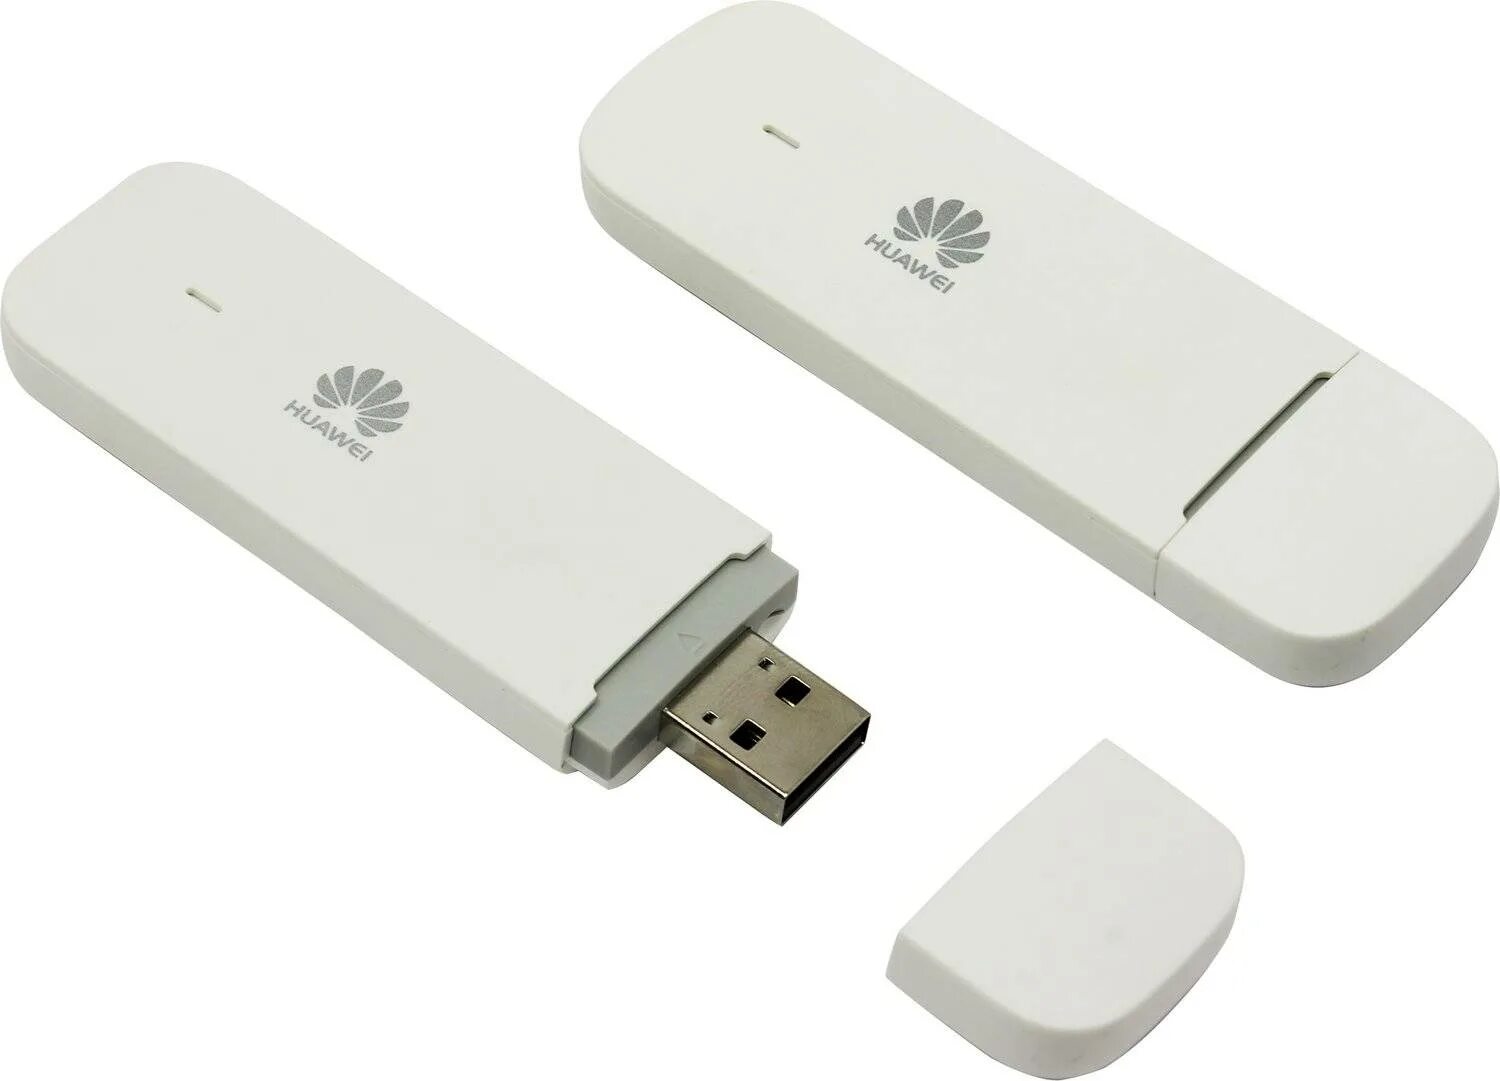 Модем Huawei e3372h-153. USB модем Huawei e3372. USB модем 4g Huawei e3372h. USB модем Huawei e3372h-153. Купить модем хуавей